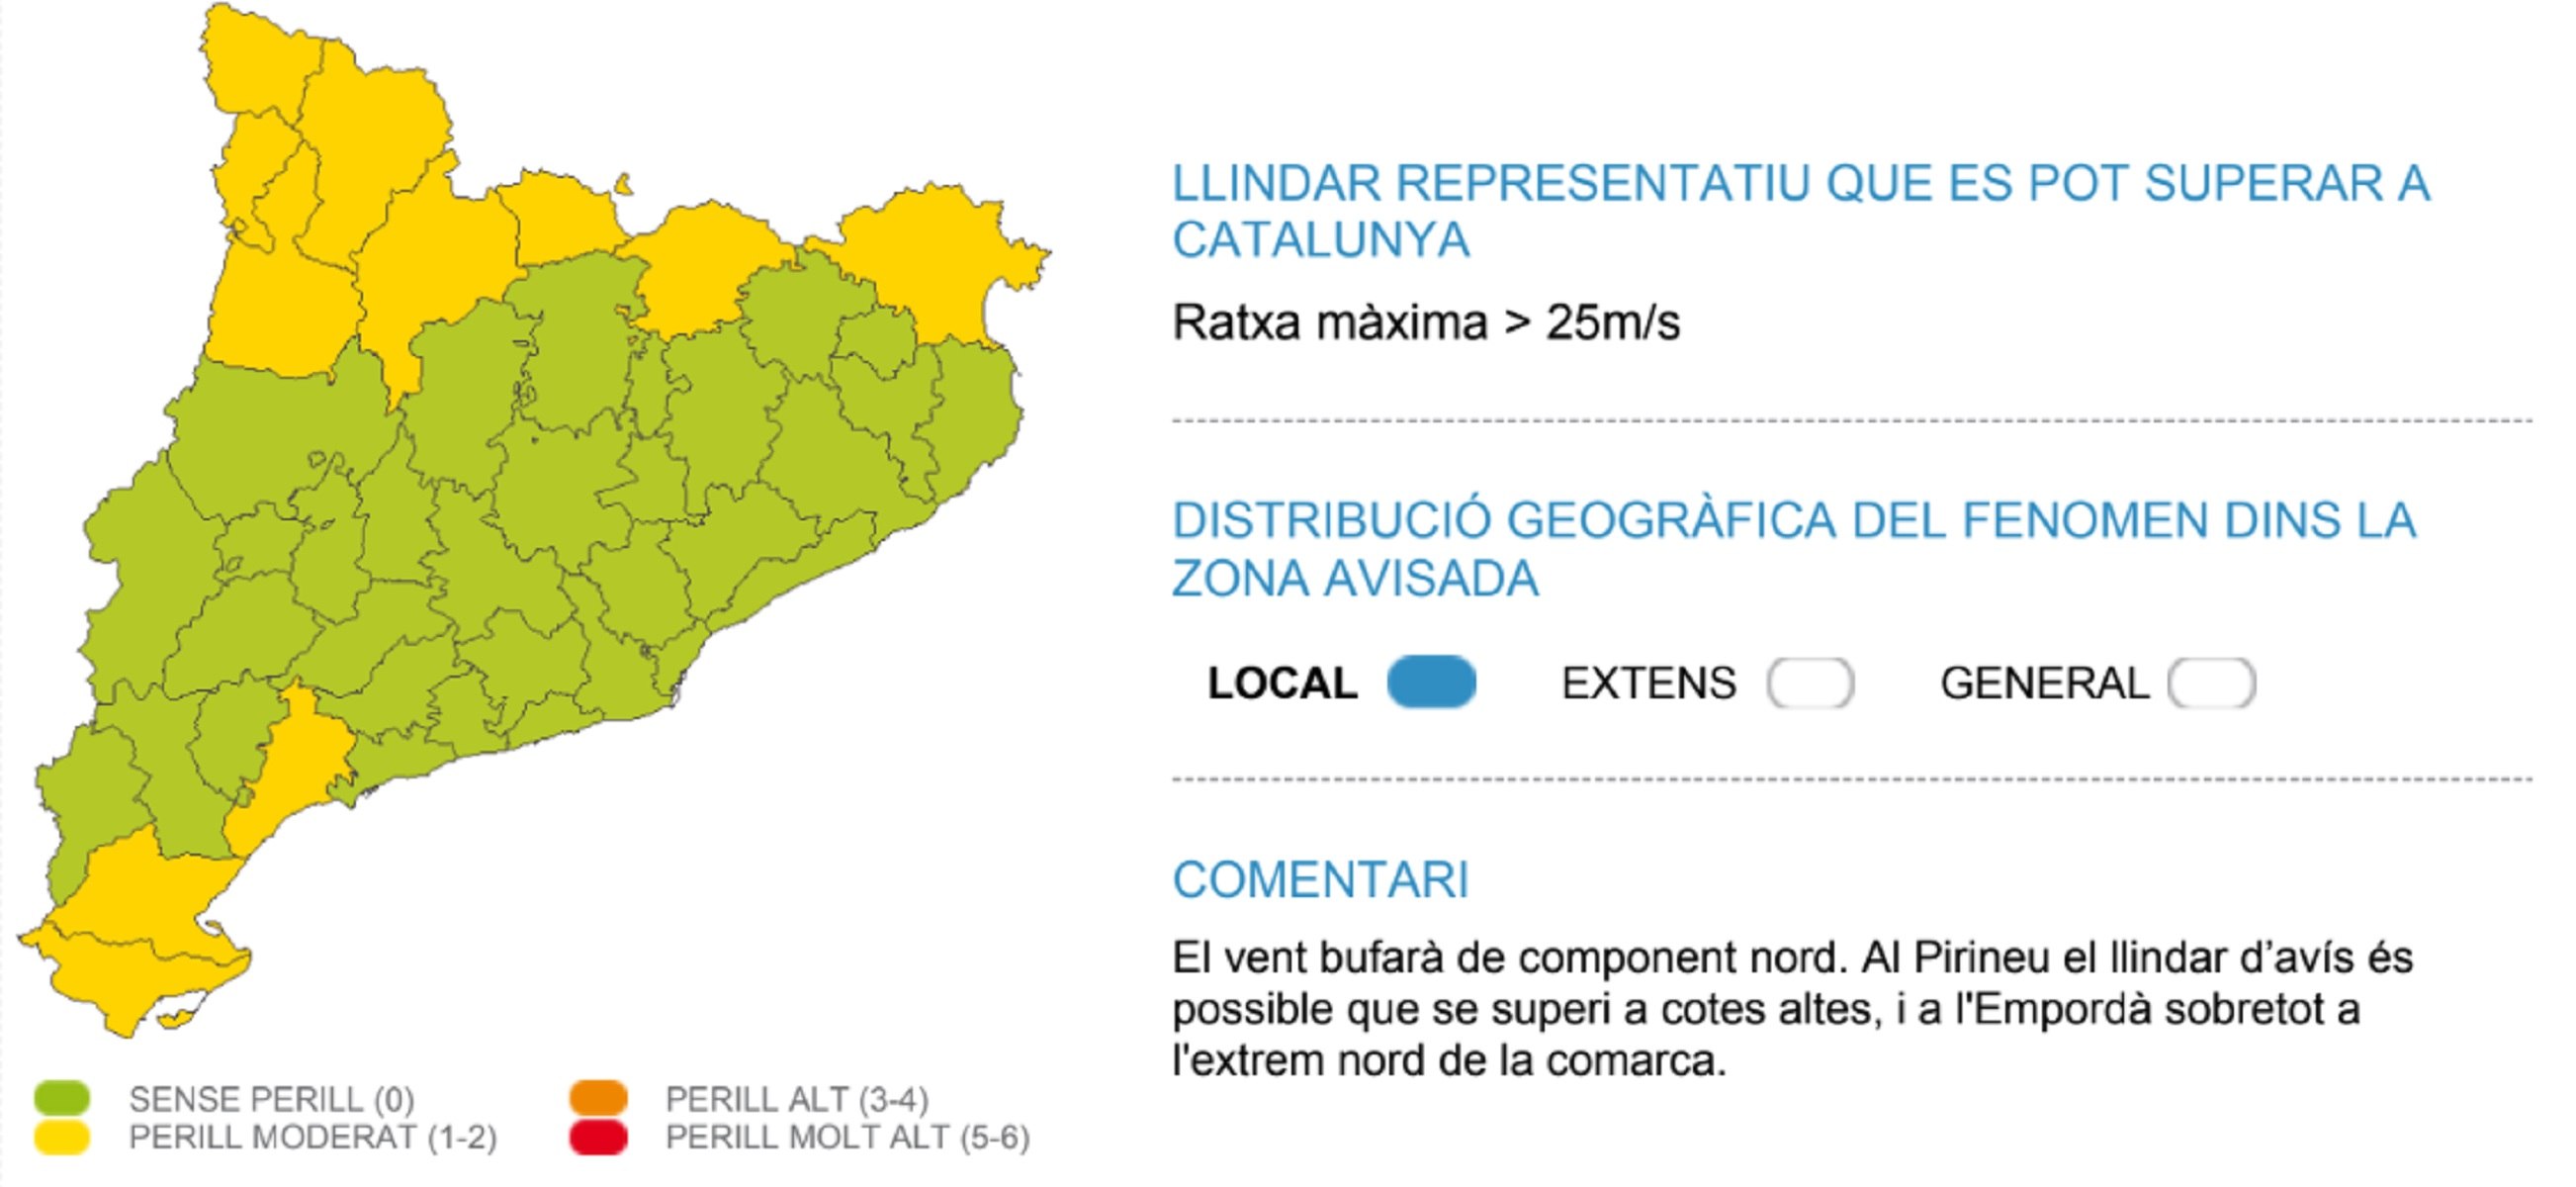 Alerta por|para fuertes ventoleras Catalunya el miércoles, 20 de diciembre Meteocat